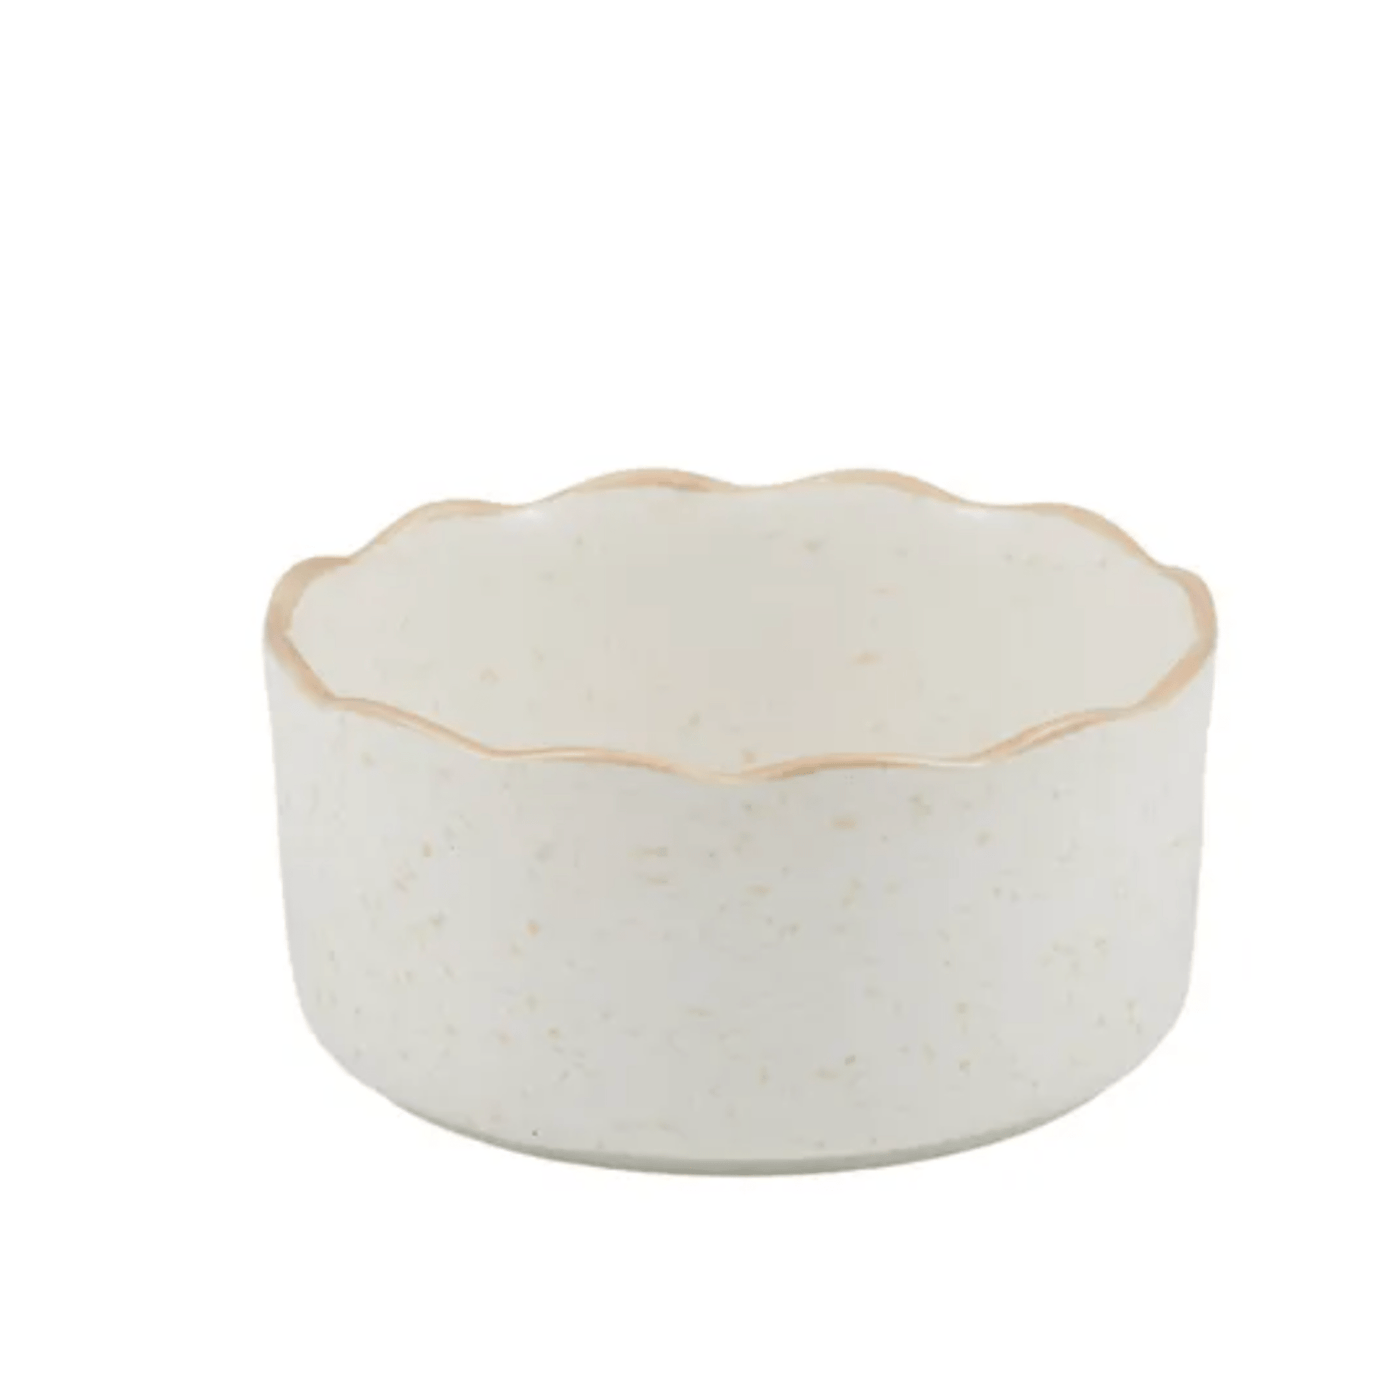 Granada Ceramic Bowl